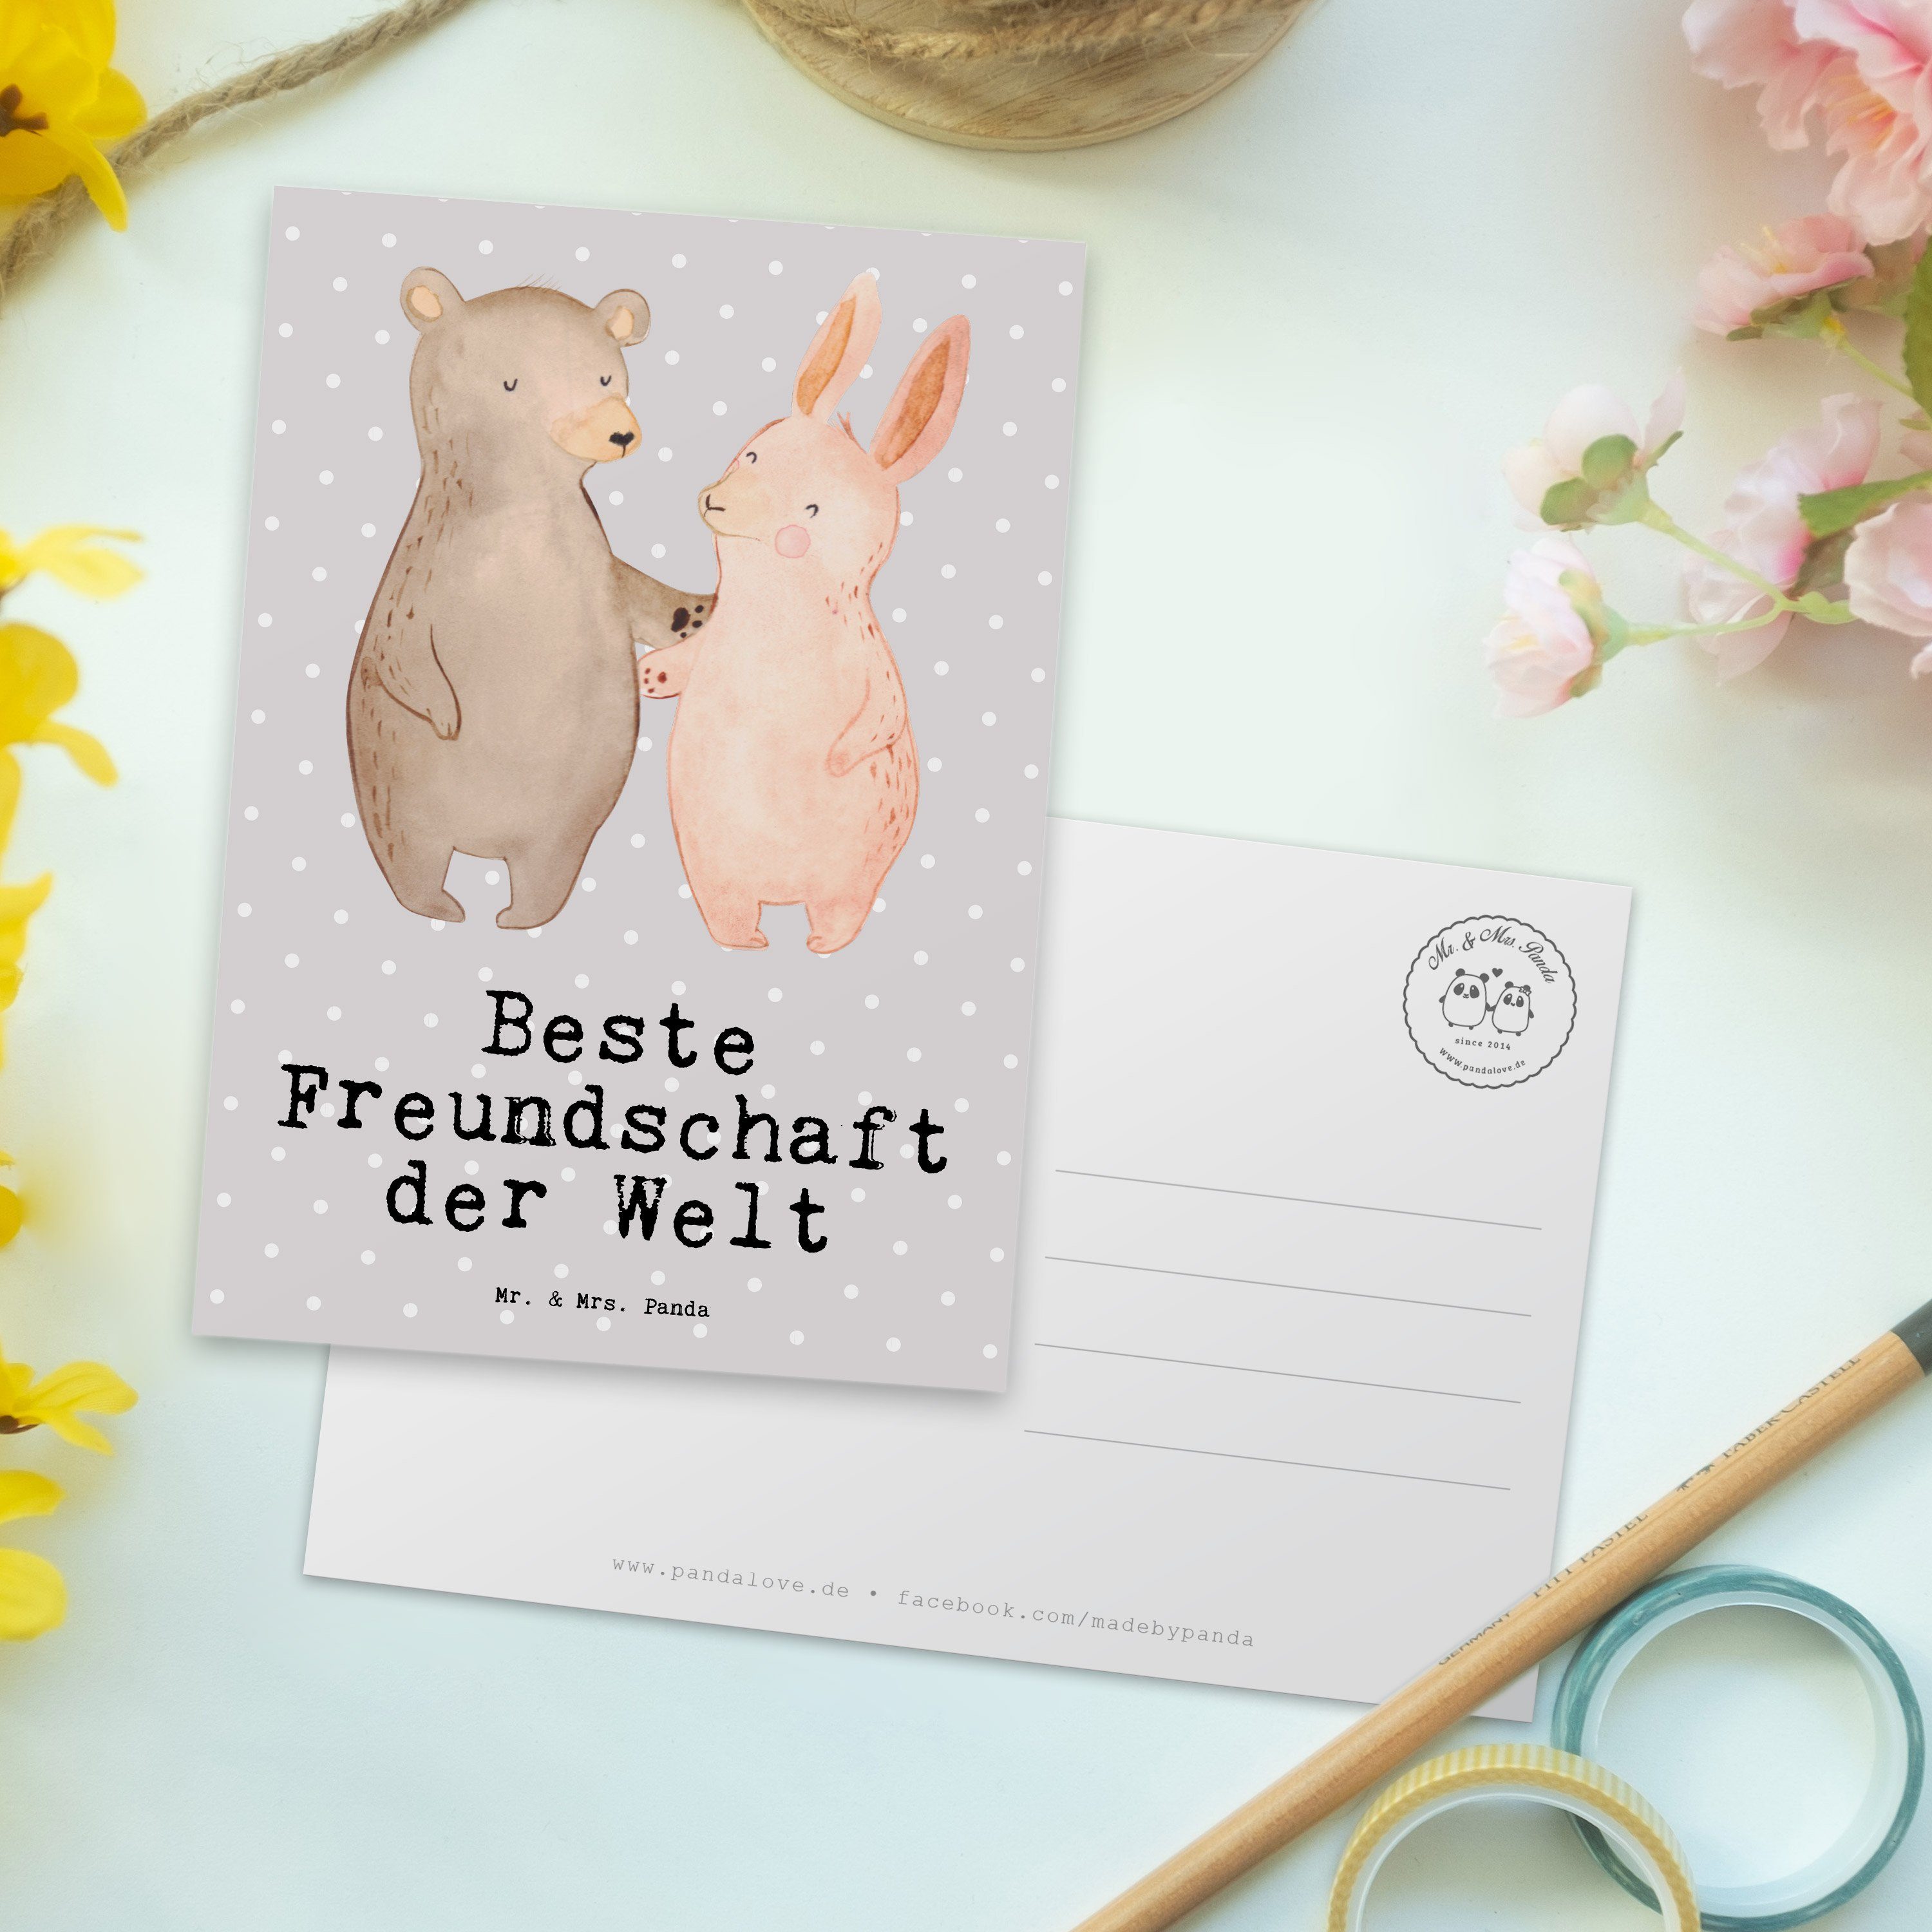 Mr. & Mrs. Panda Postkarte Welt Hase Beste Freunde der Freundschaft - Grau Geschenk, Pastell 